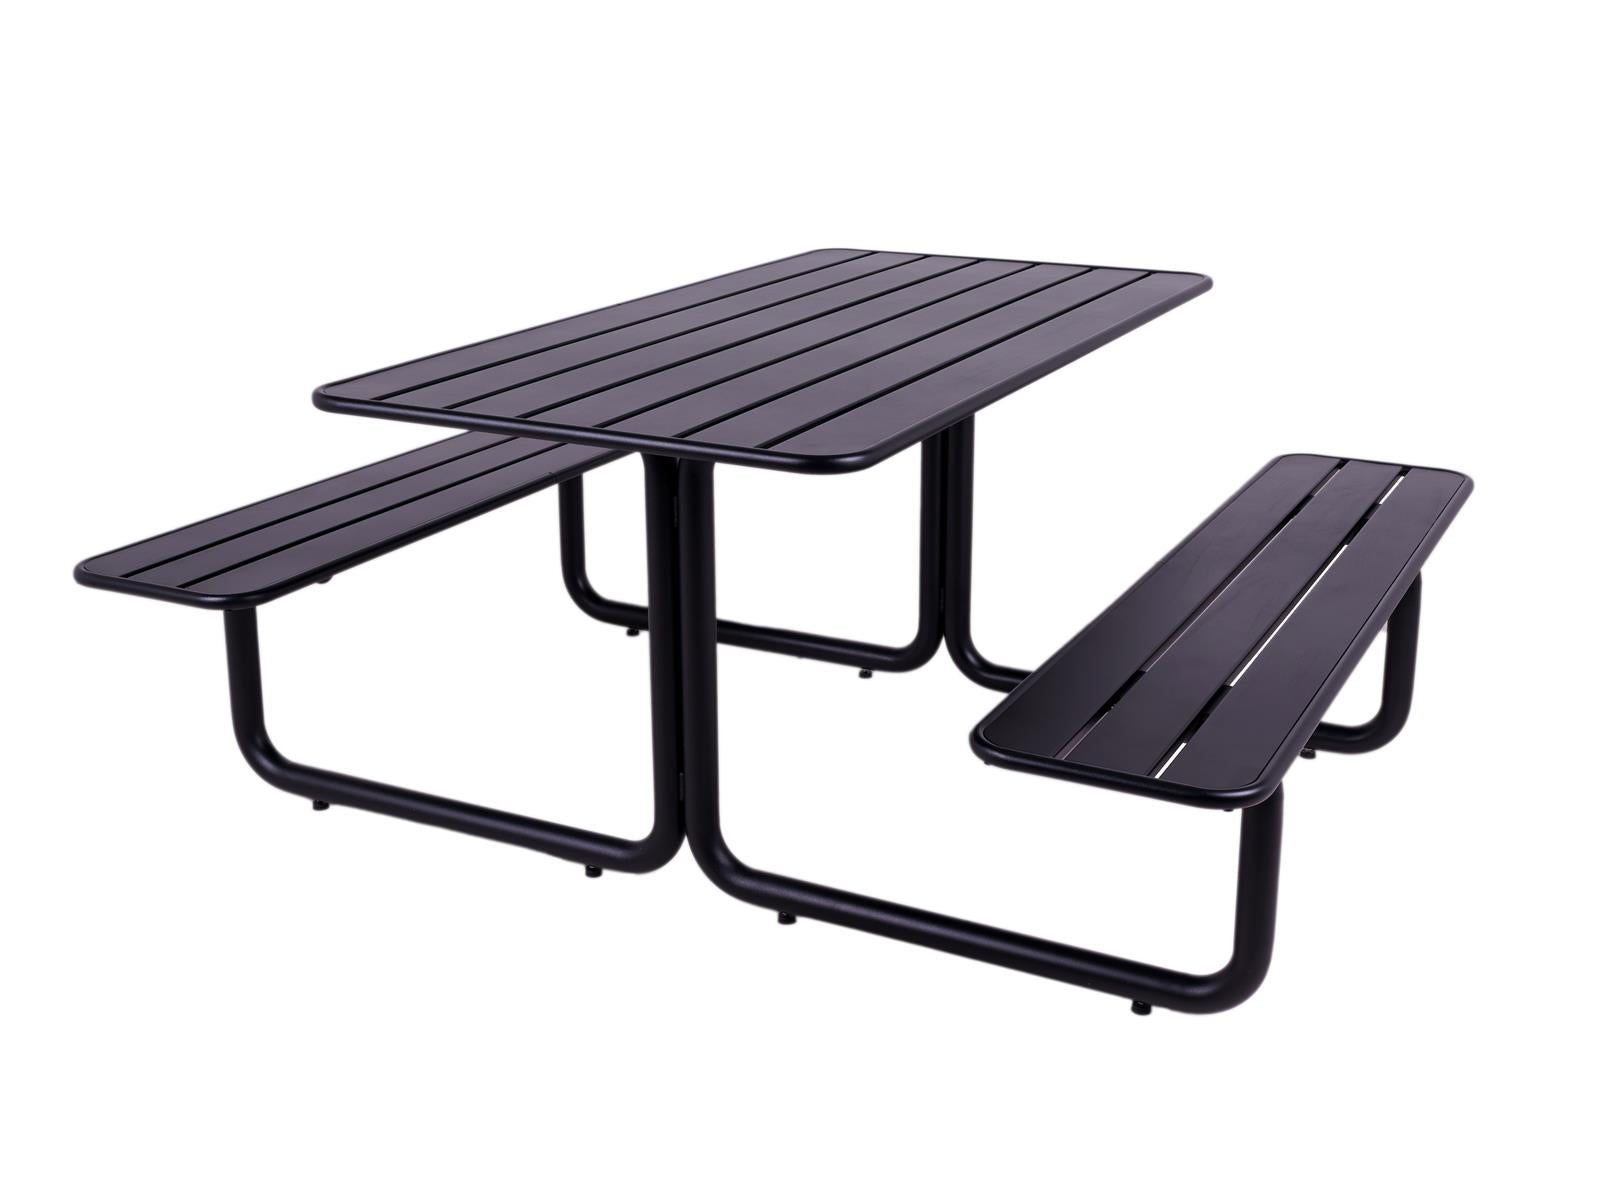 maximavida metalen picknicktafel brasil zwart schuin 3763d7d8-3508-45b1-8074-5ae5f52cc95b